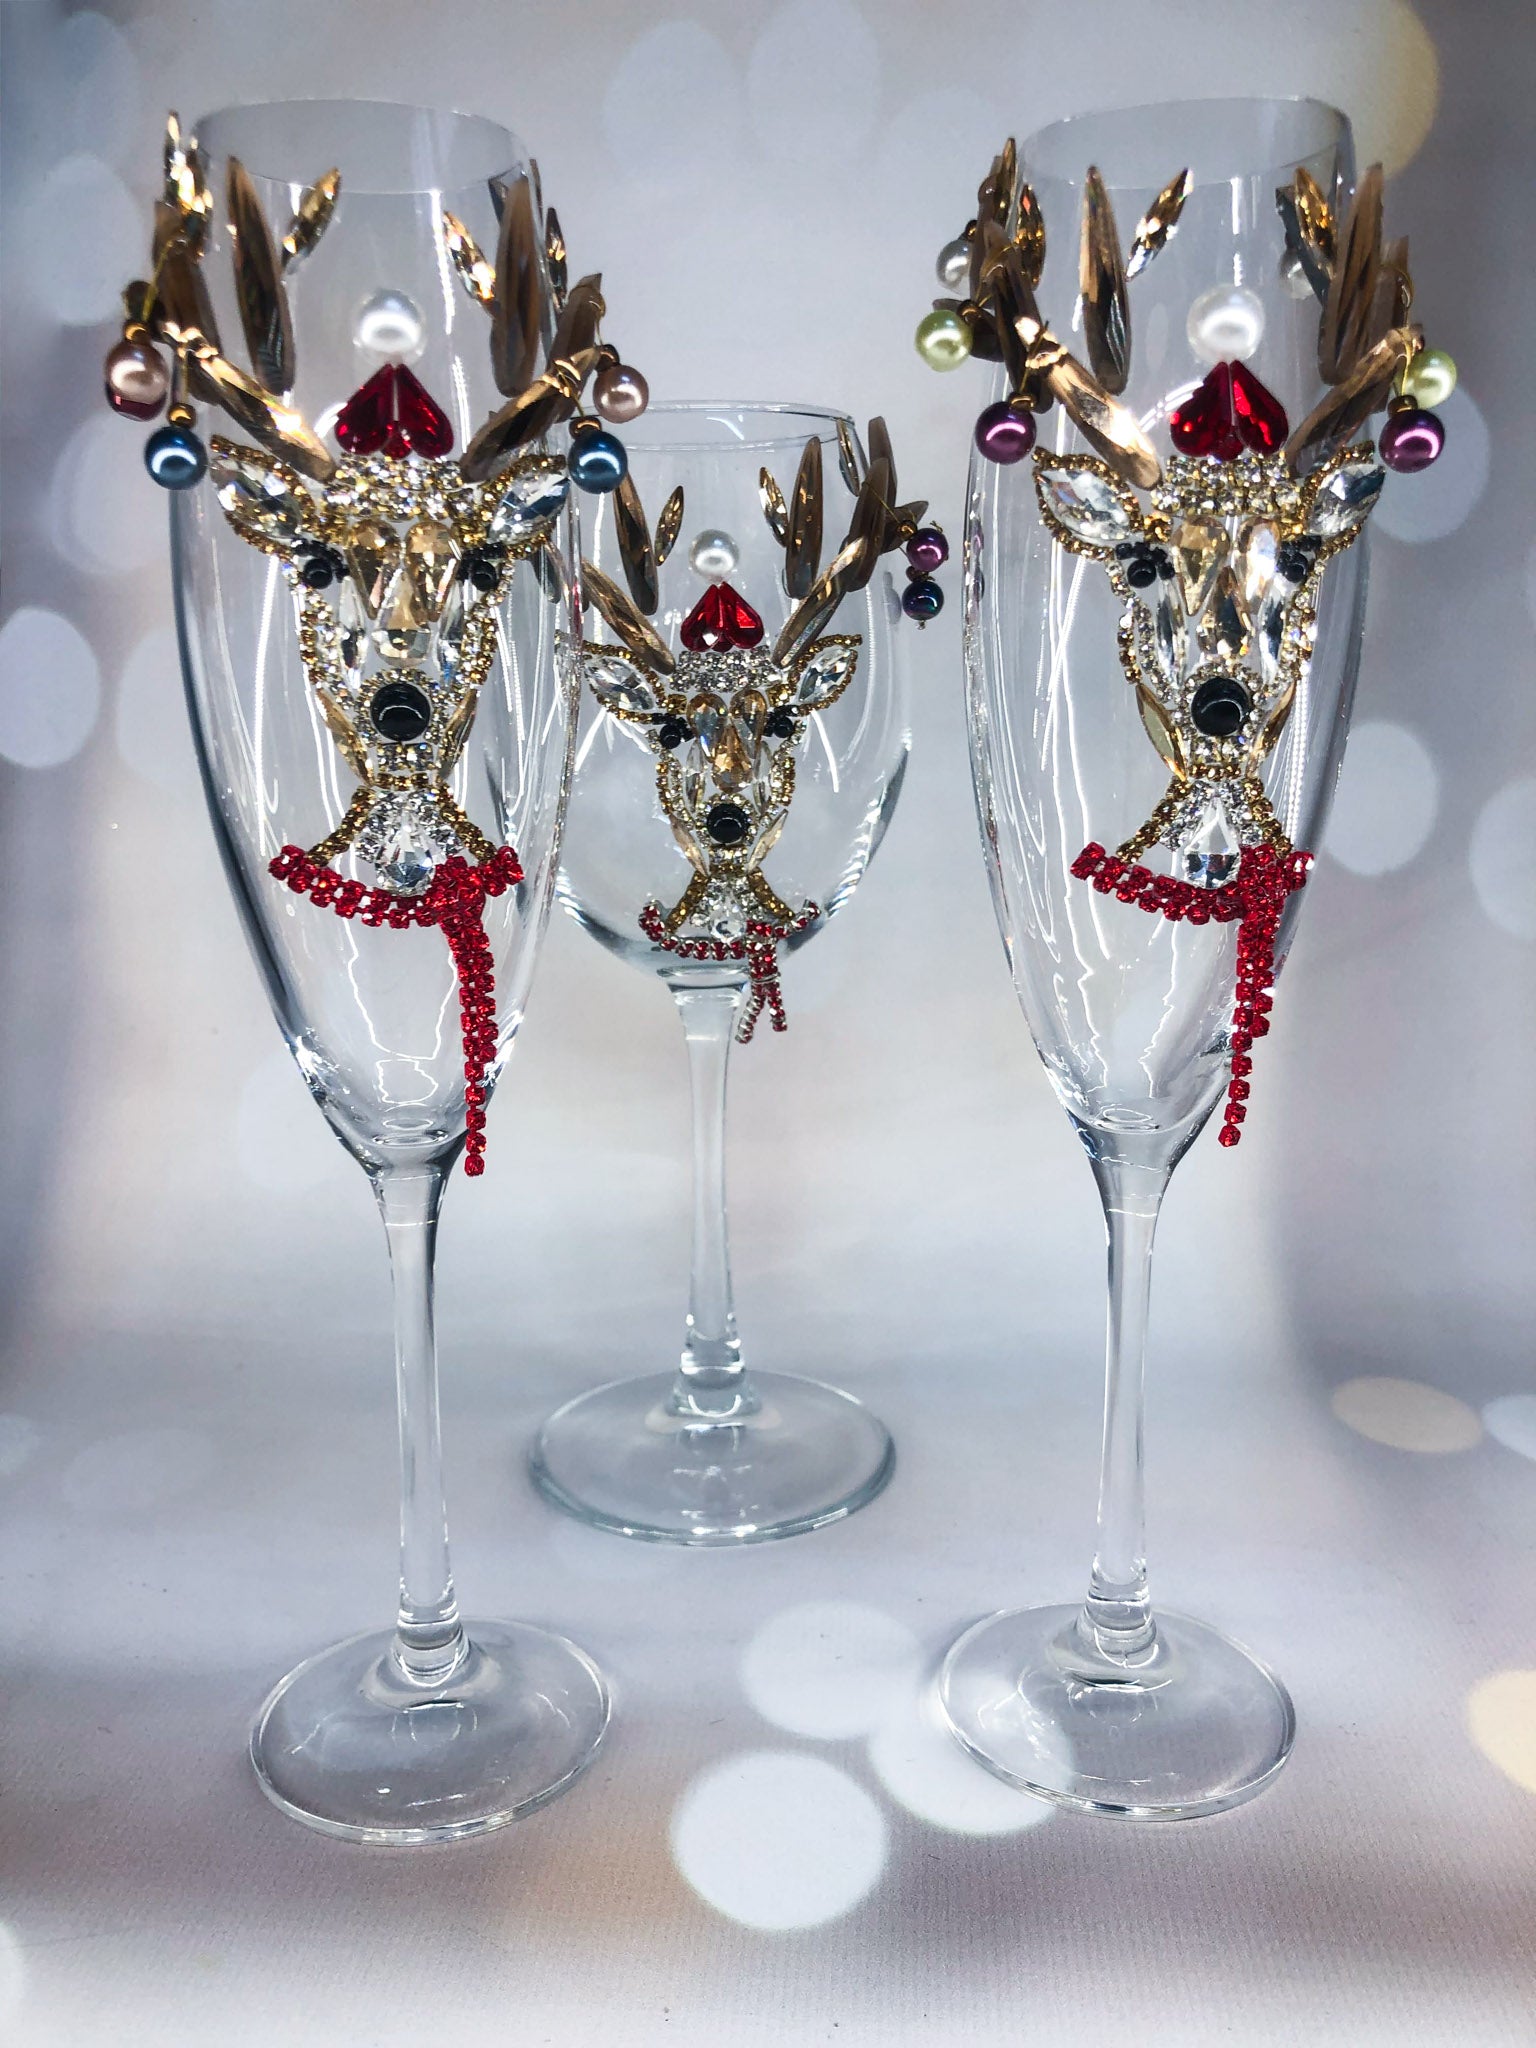 Set of 4 Skeleton Hand Wine Glass Set Goblet Silver Metal Stem New